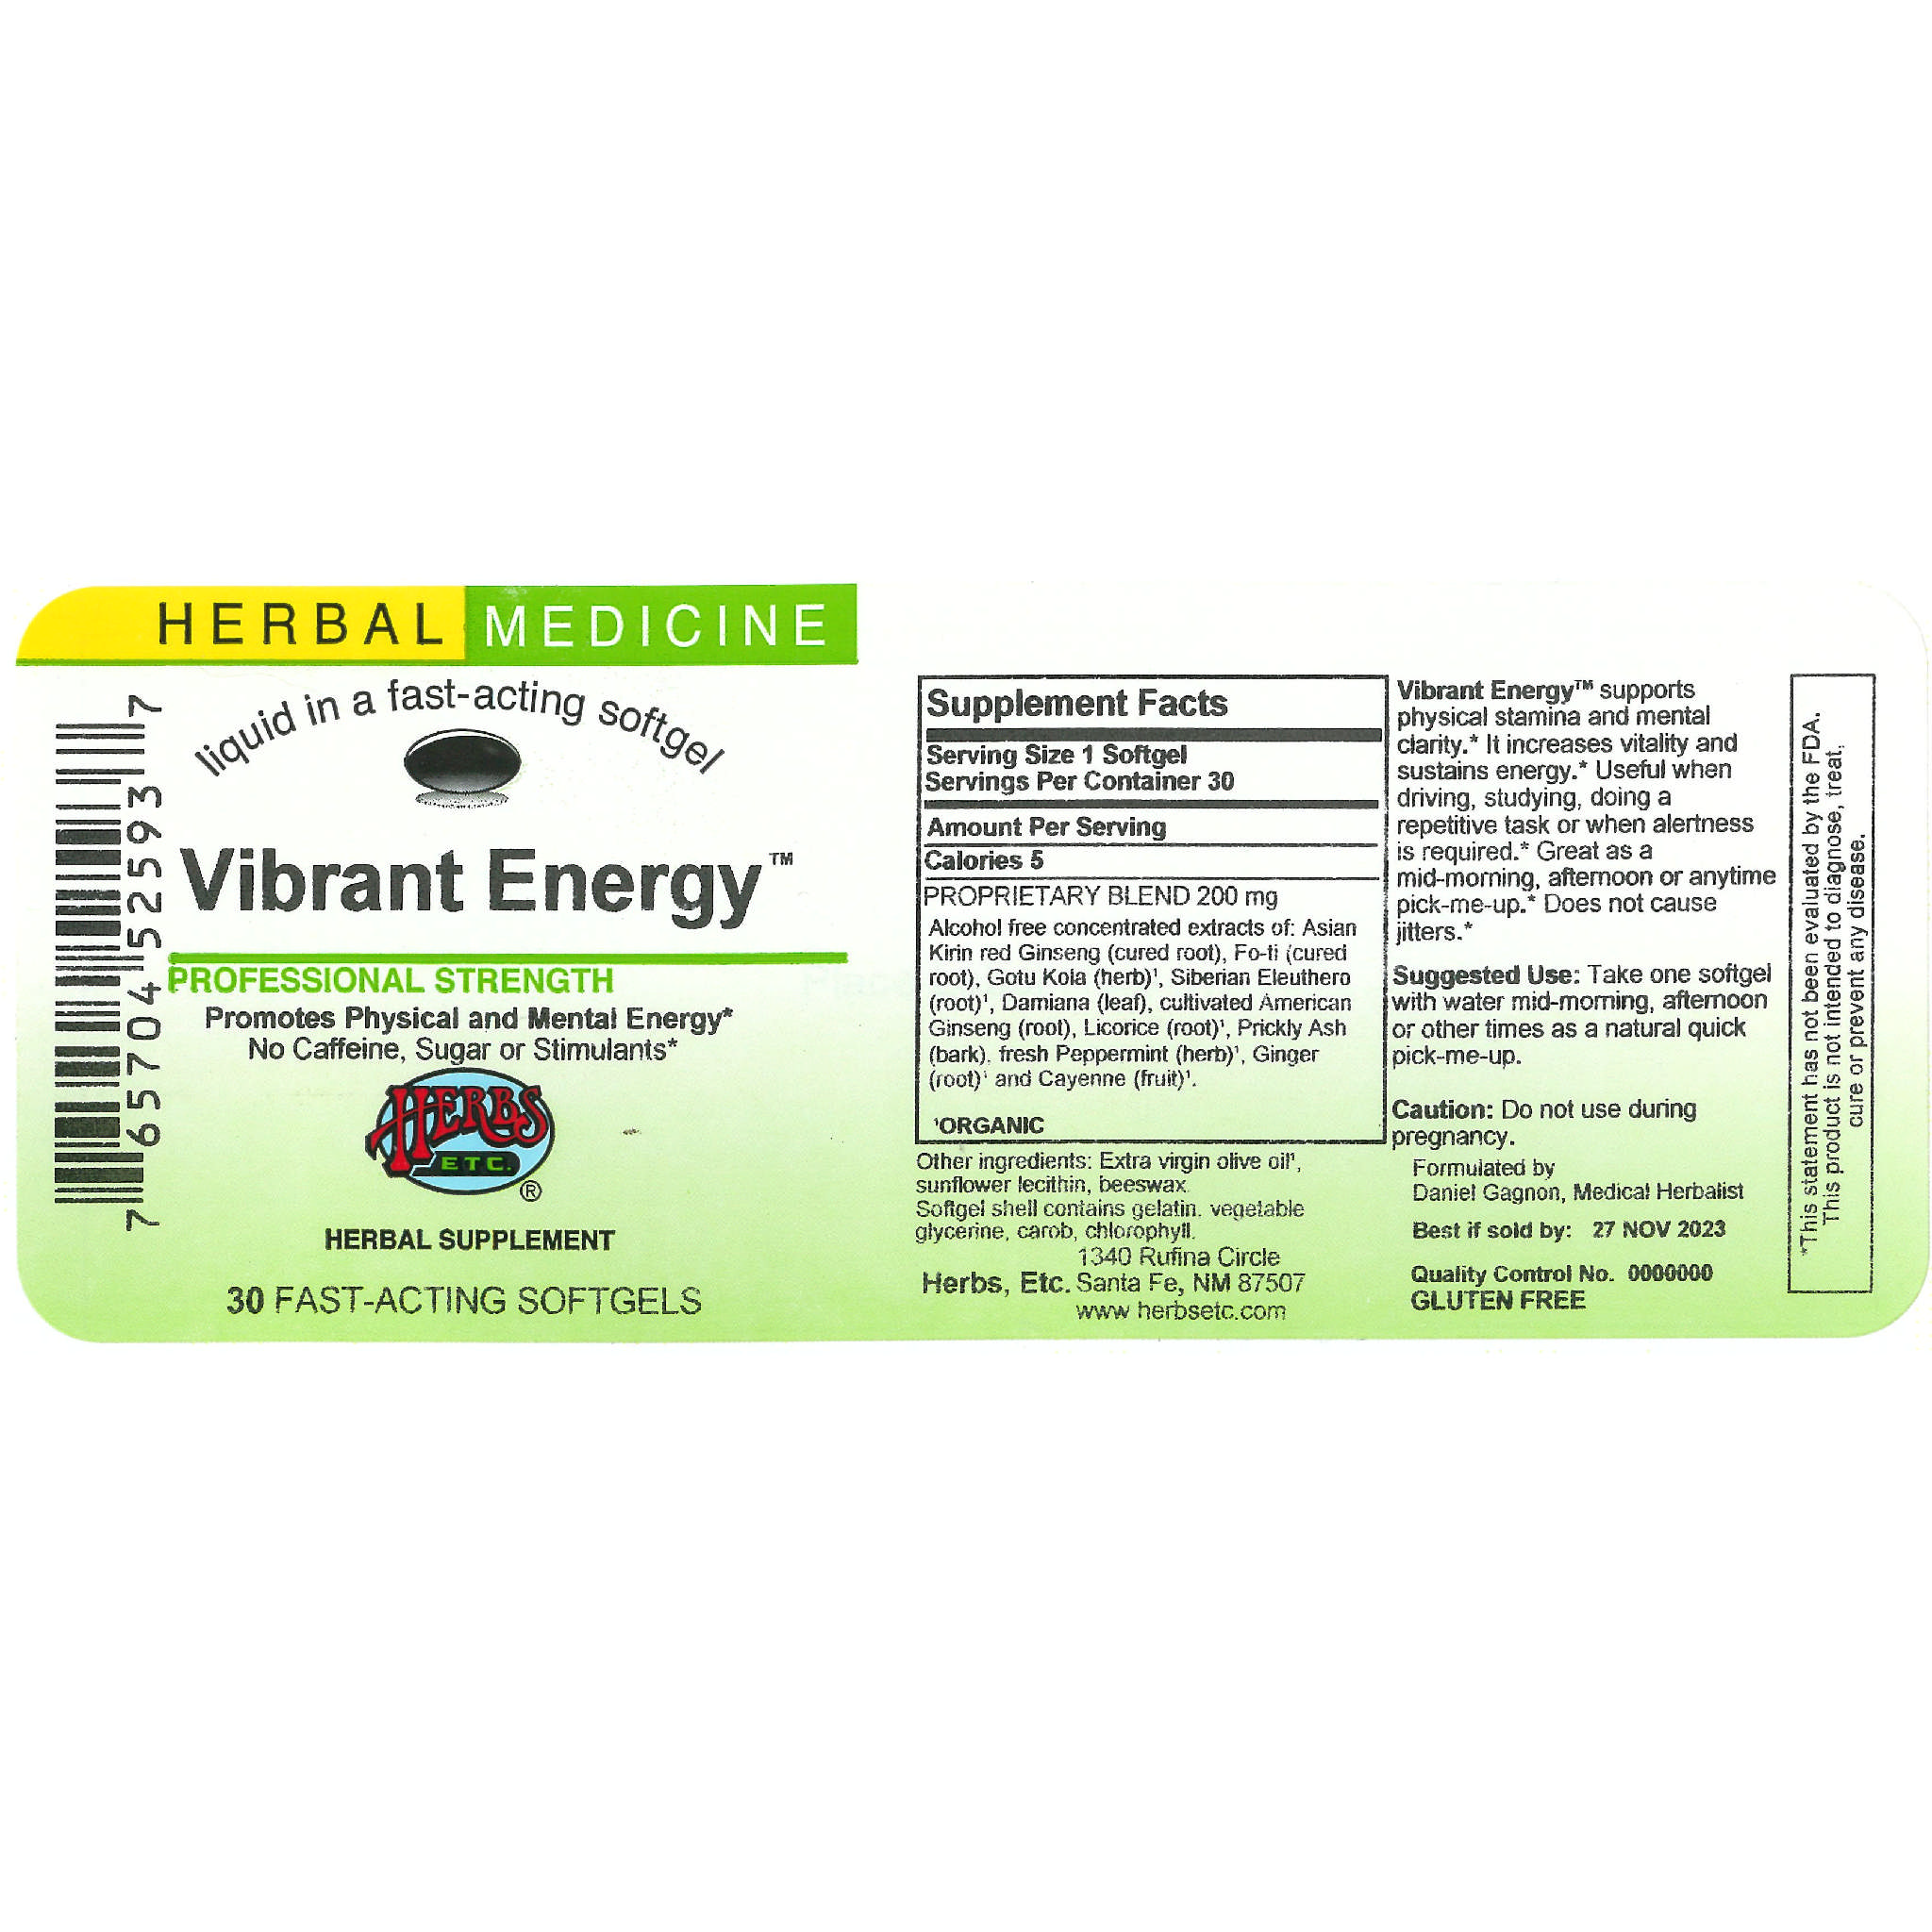 Herbs Etc - Vibrant Energy